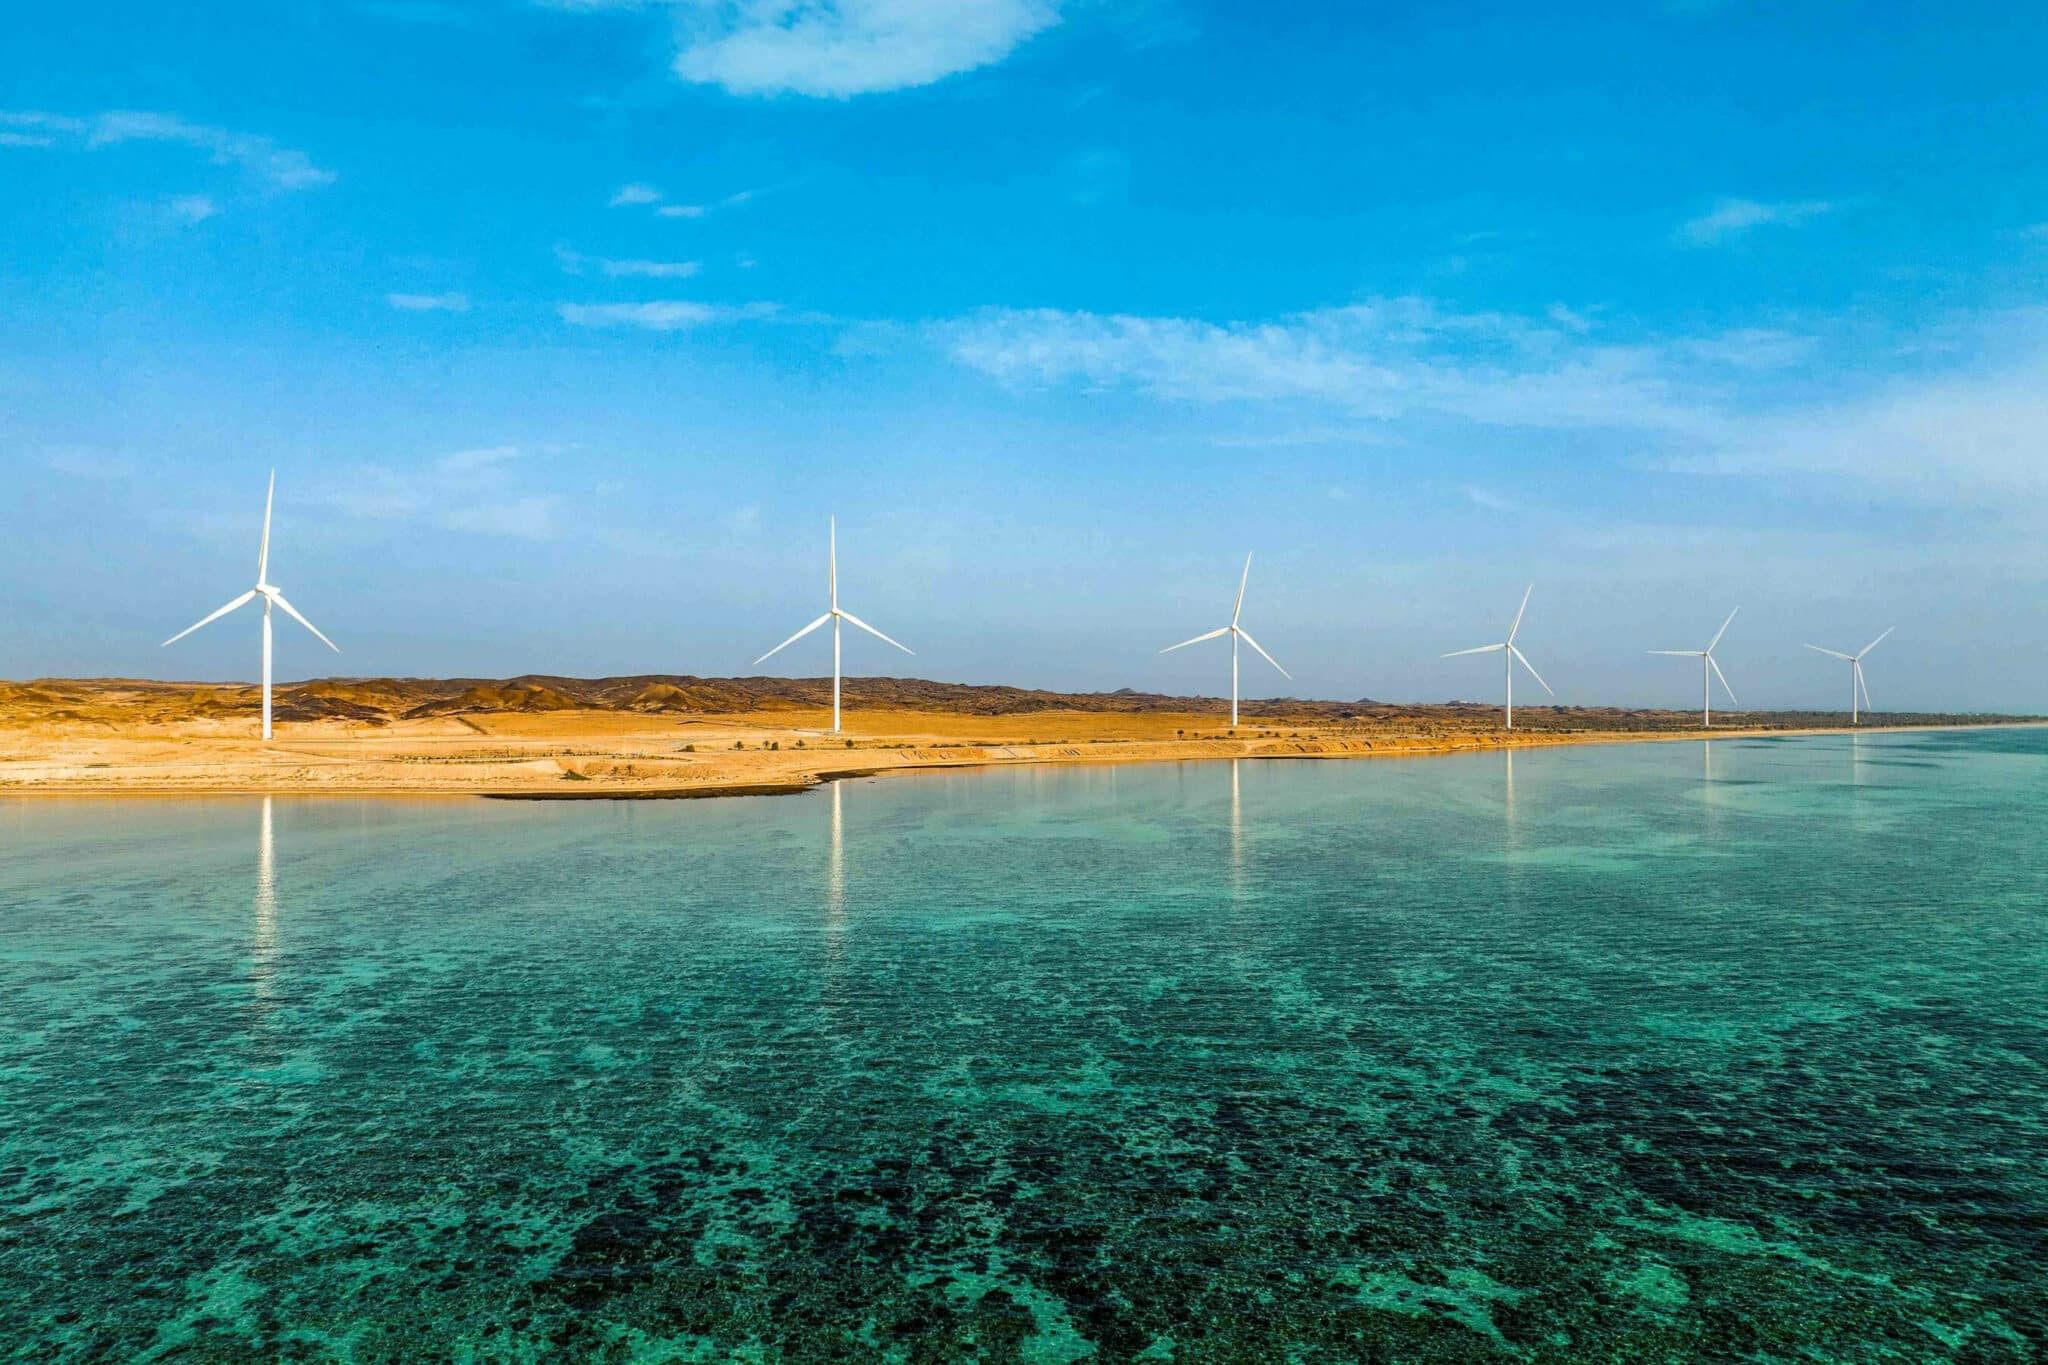 27-megawatt (MW) Wind Farm located on Delma Island in Abu Dhabi, UAE